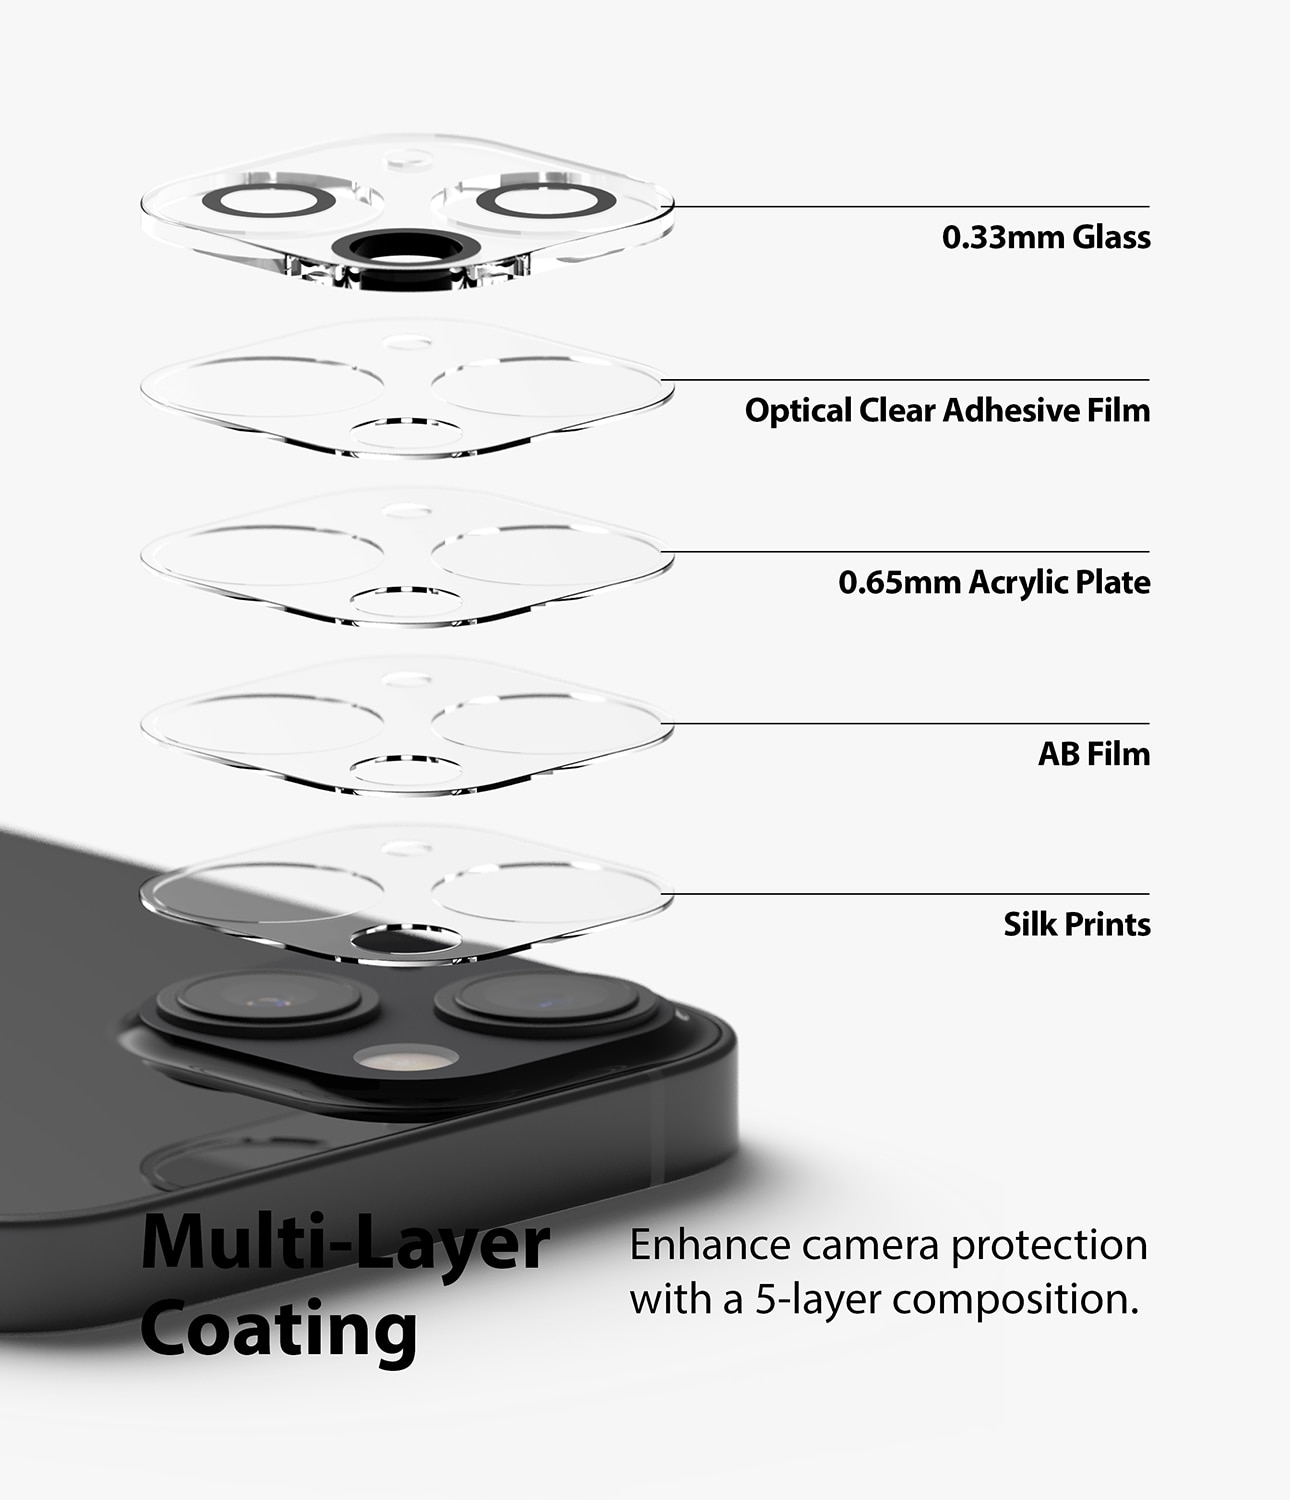 Protection caméra iPhone 13-13 Mini